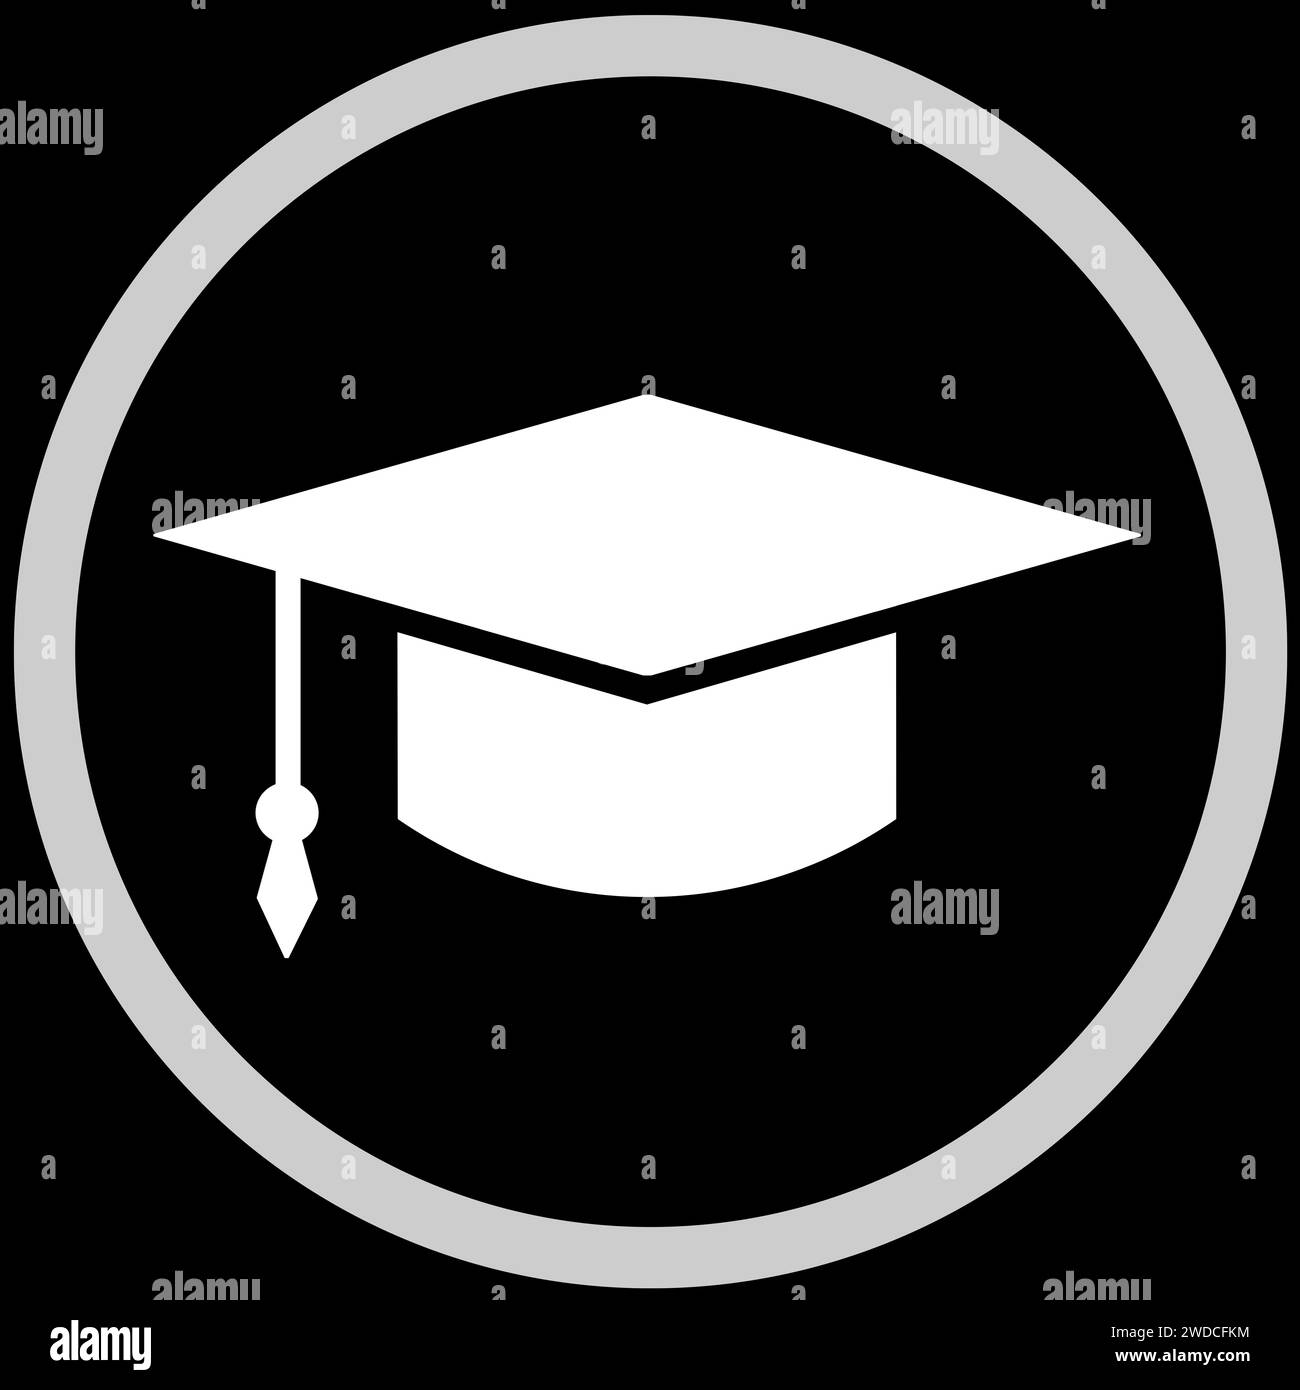 Cappello quadrato per uso accademico nella cornice, illustrazione su sfondo nero Foto Stock